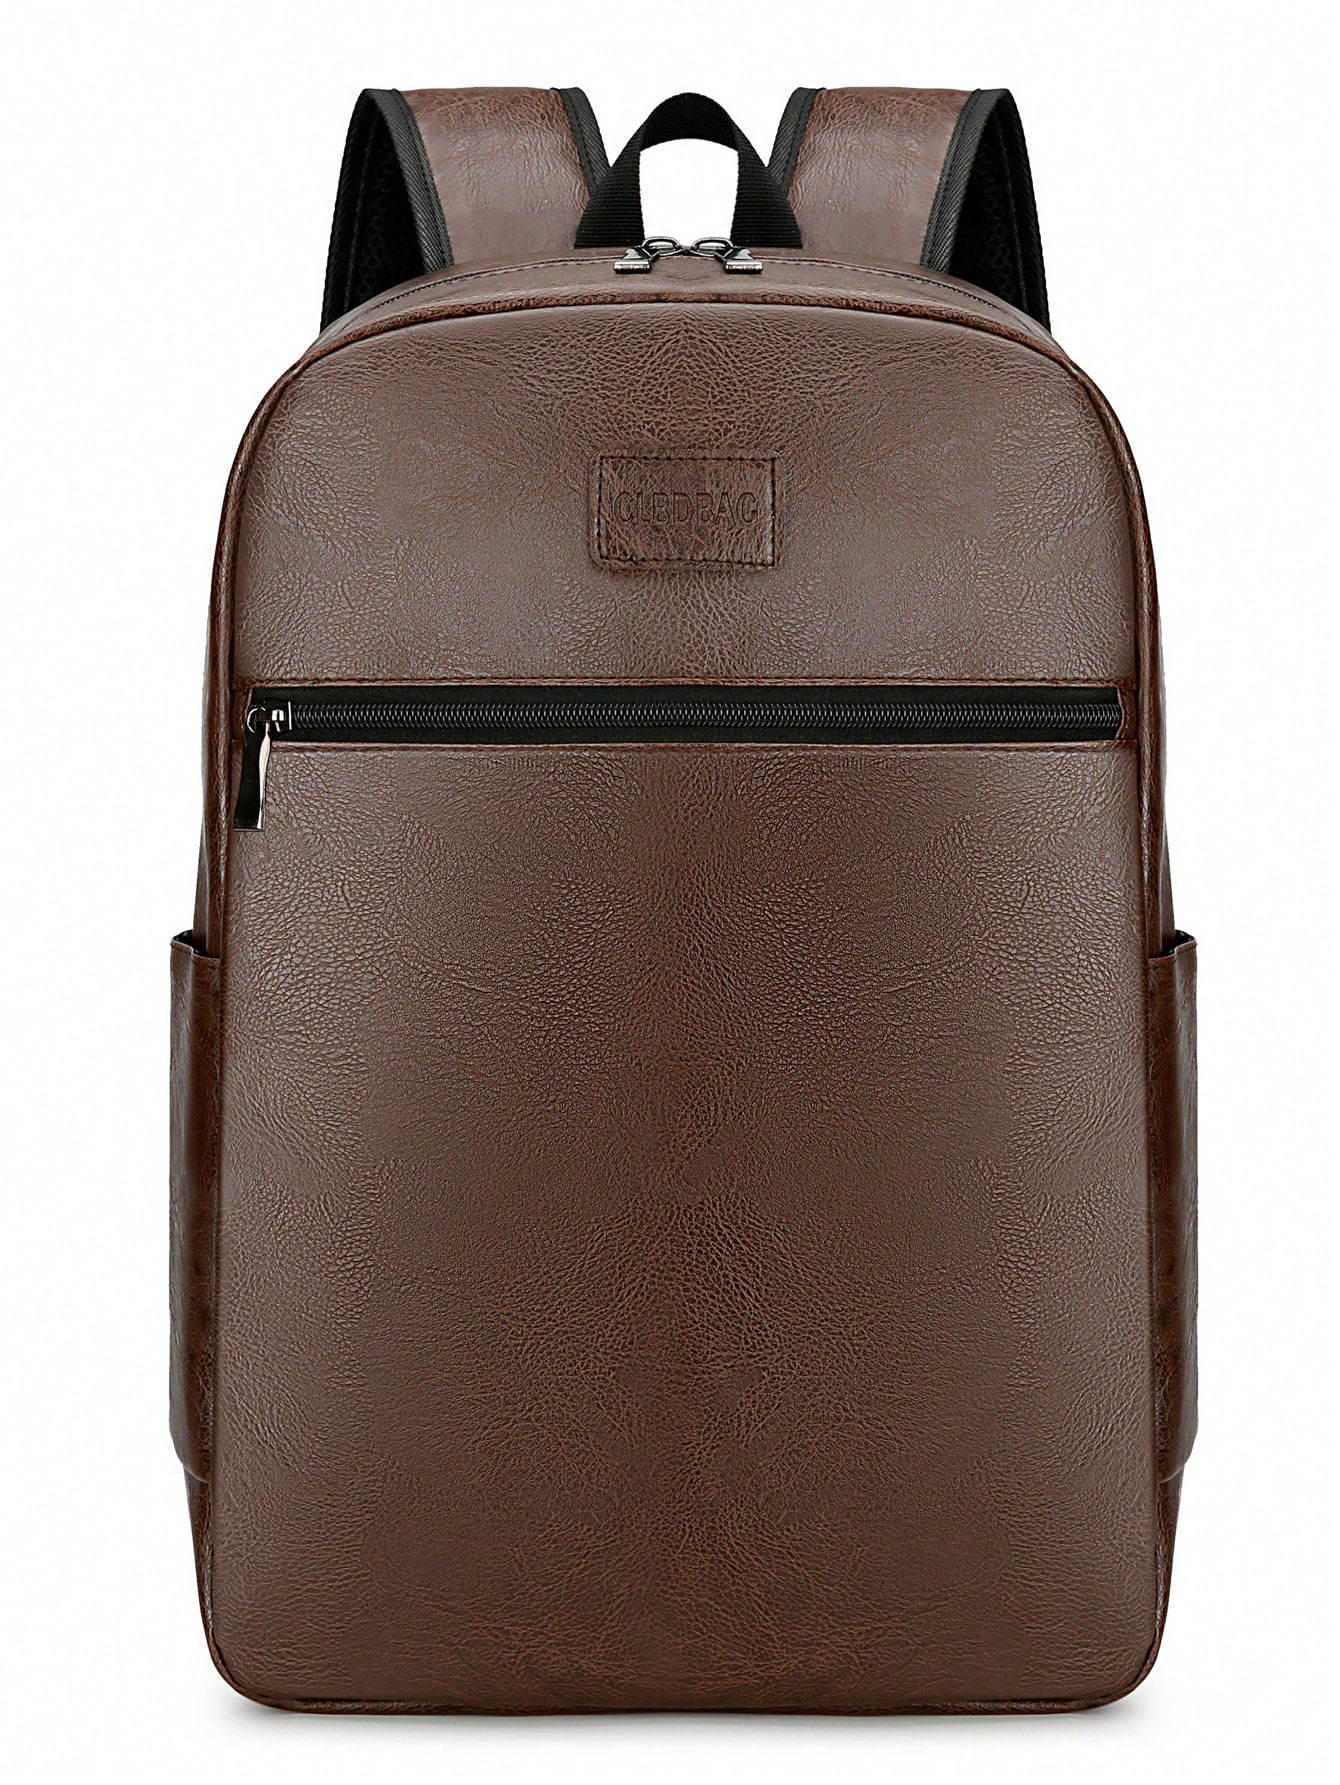 мясник и ножи мясницкий незаменимый безопасный уютный плед рюкзак 17 дюймов винтажный графический винтажный рюкзак для пикников Винтажный мужской рюкзак из искусственной кожи, коричневый